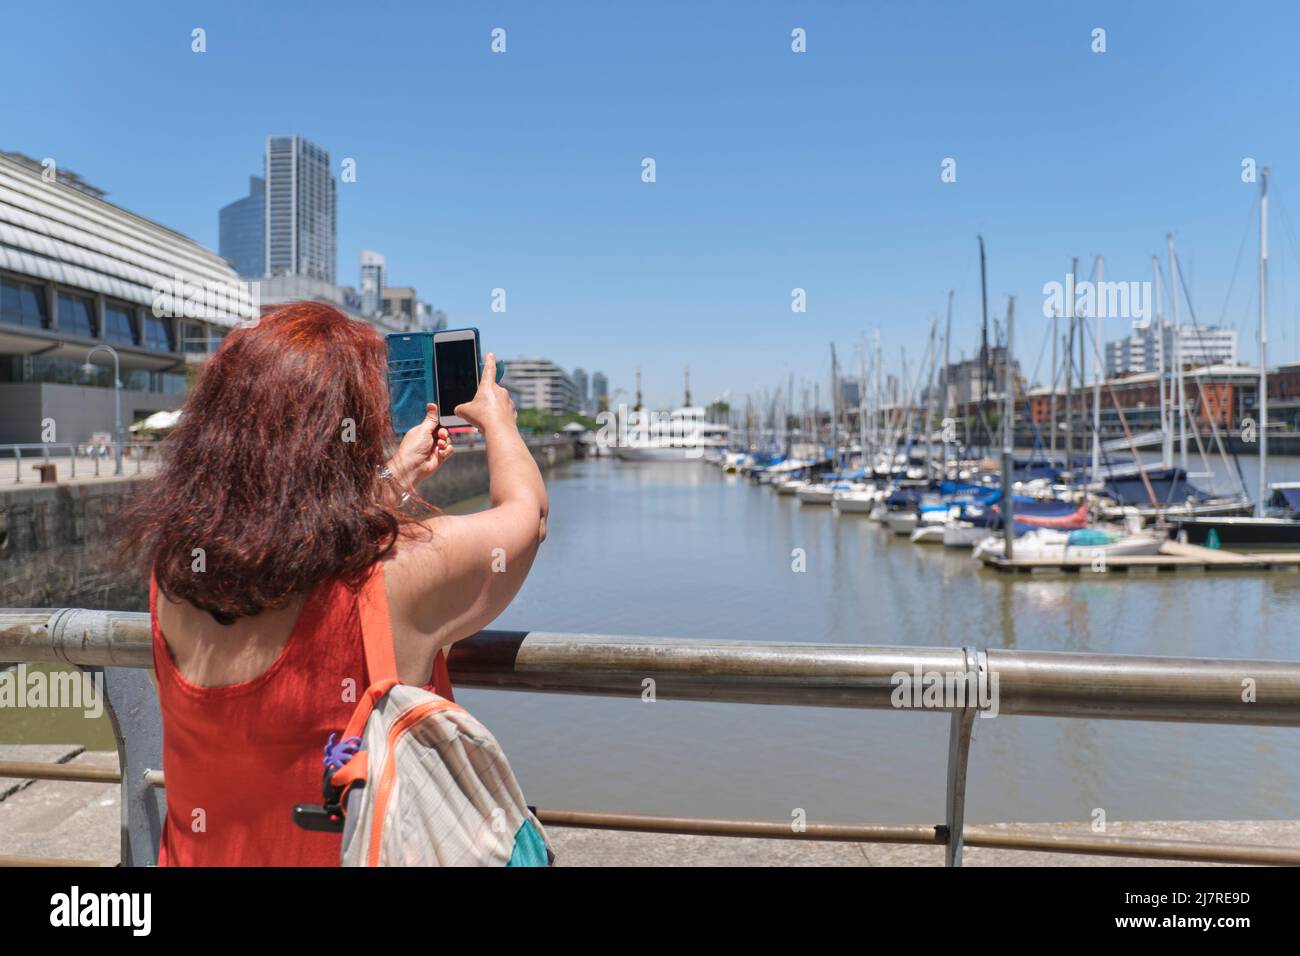 Weibliche Touristen von hinten gesehen, die an einem sonnigen Sommertag mit ihrem Telefon in Puerto Madero, in Buenos Aires, Argentinien, Fotos gemacht haben. Stockfoto